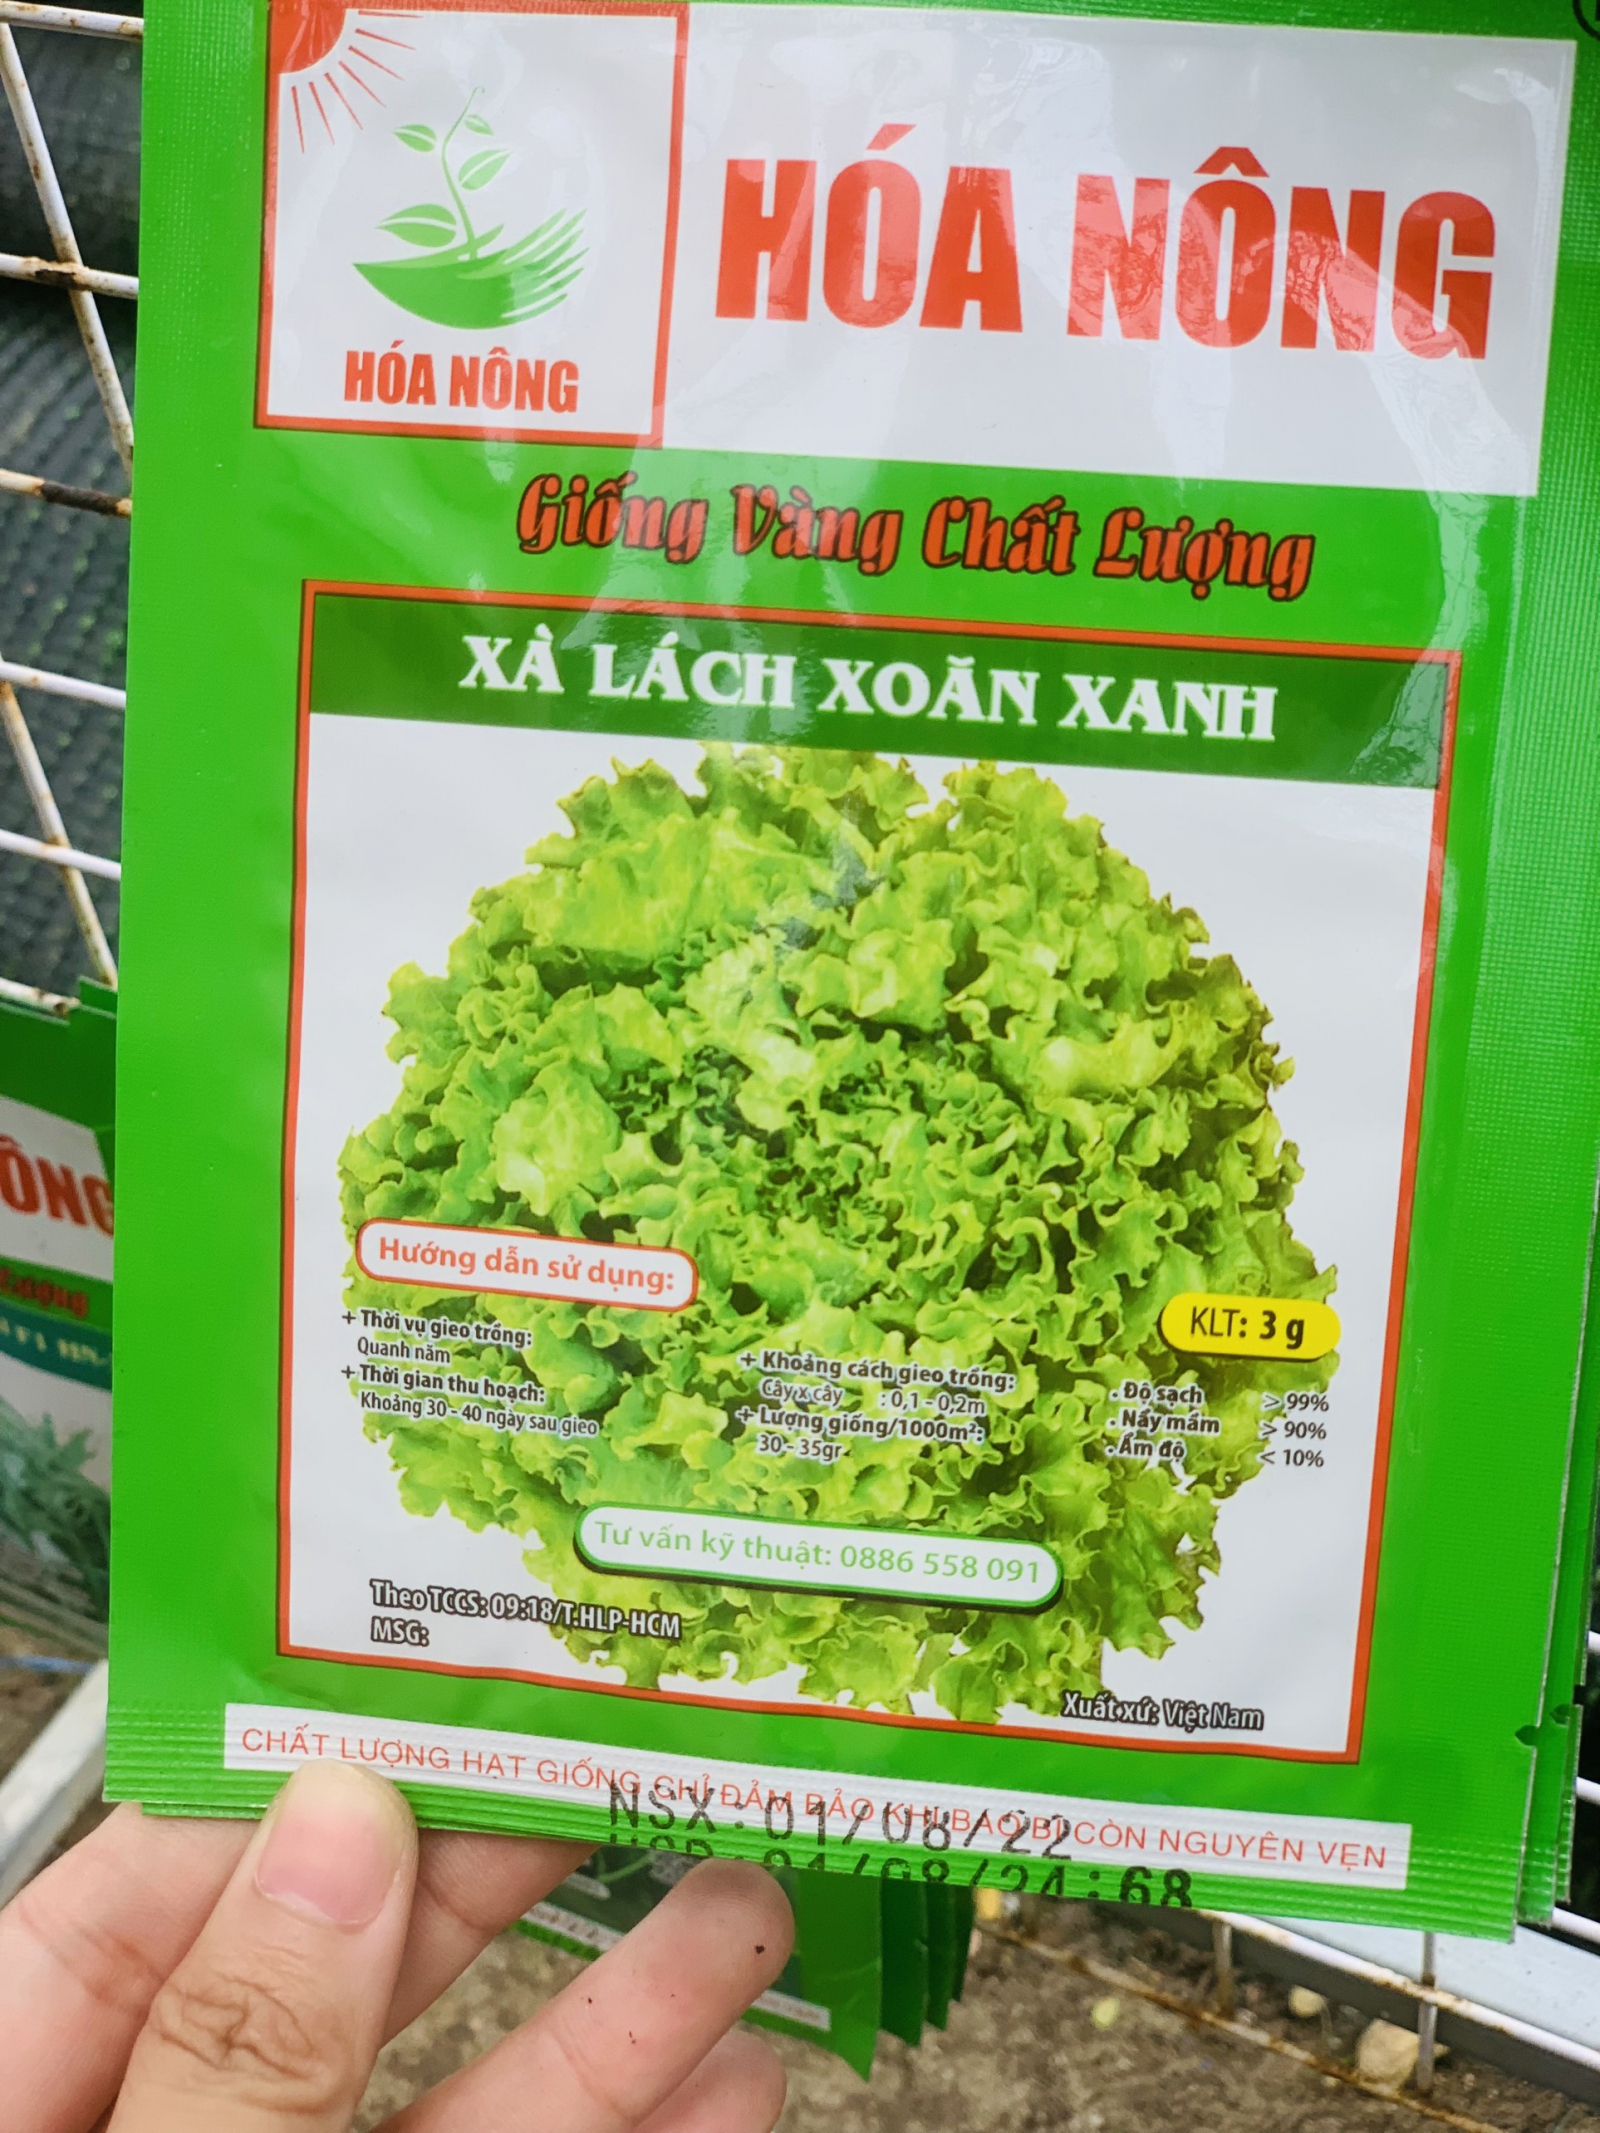 Hạt giống xà lach xoăn xanh - Vật tư nông nghiệp Hoa Sen Việt